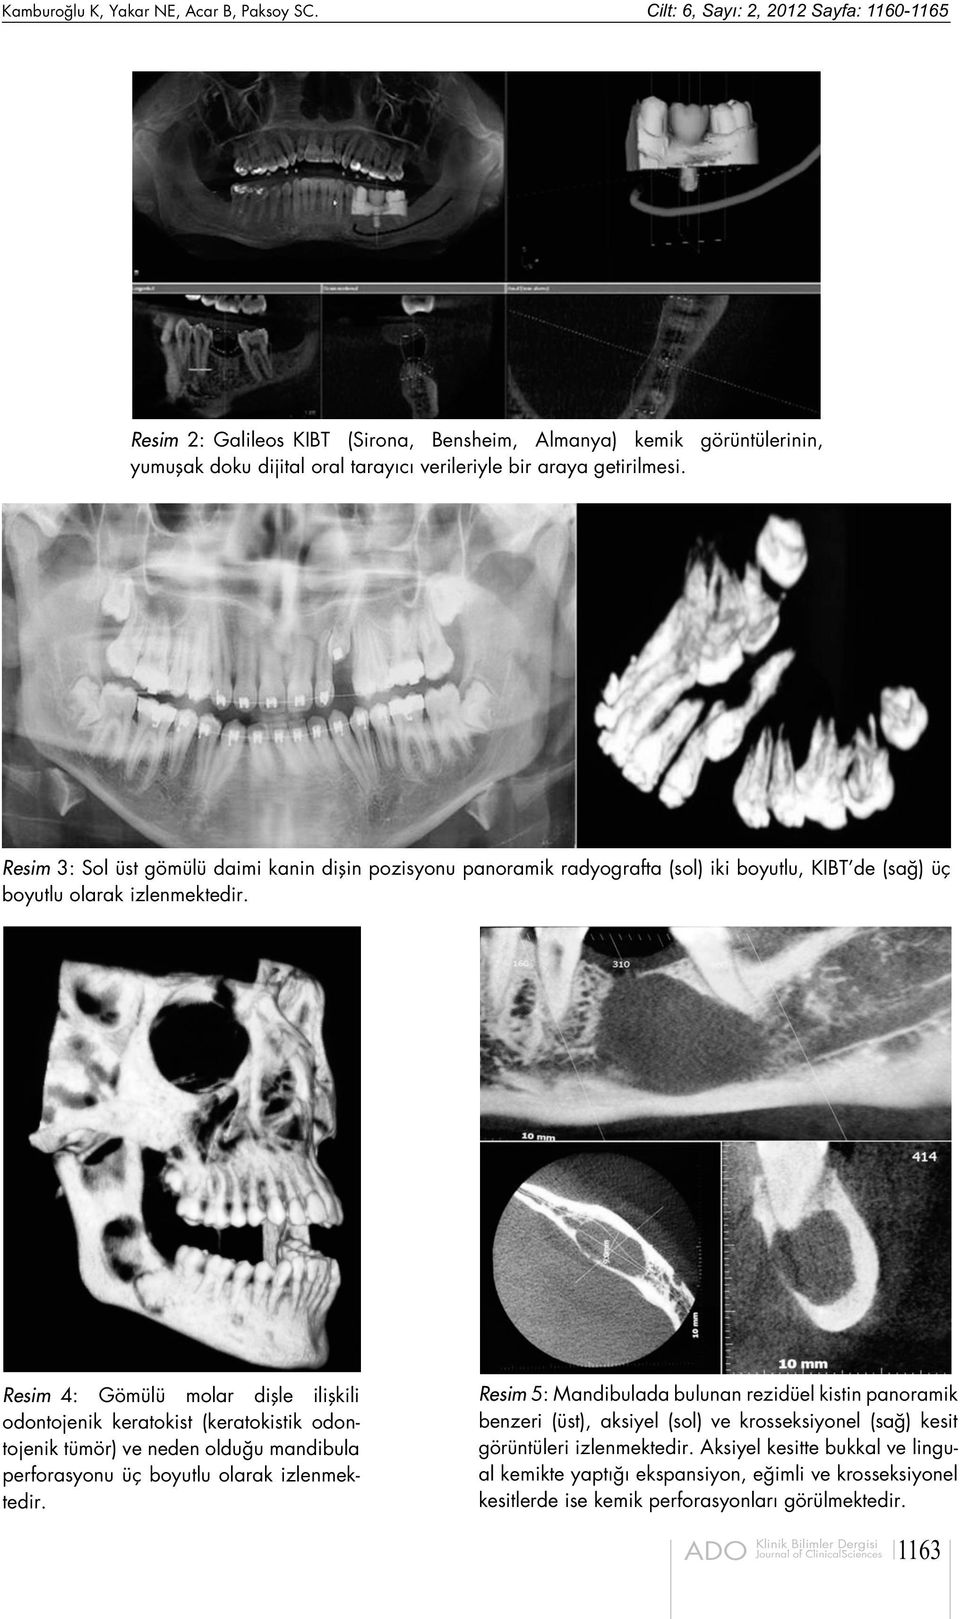 Resim 3: Sol üst gömülü daimi kanin dişin pozisyonu panoramik radyografta (sol) iki boyutlu, KIBT de (sağ) üç boyutlu olarak izlenmektedir.